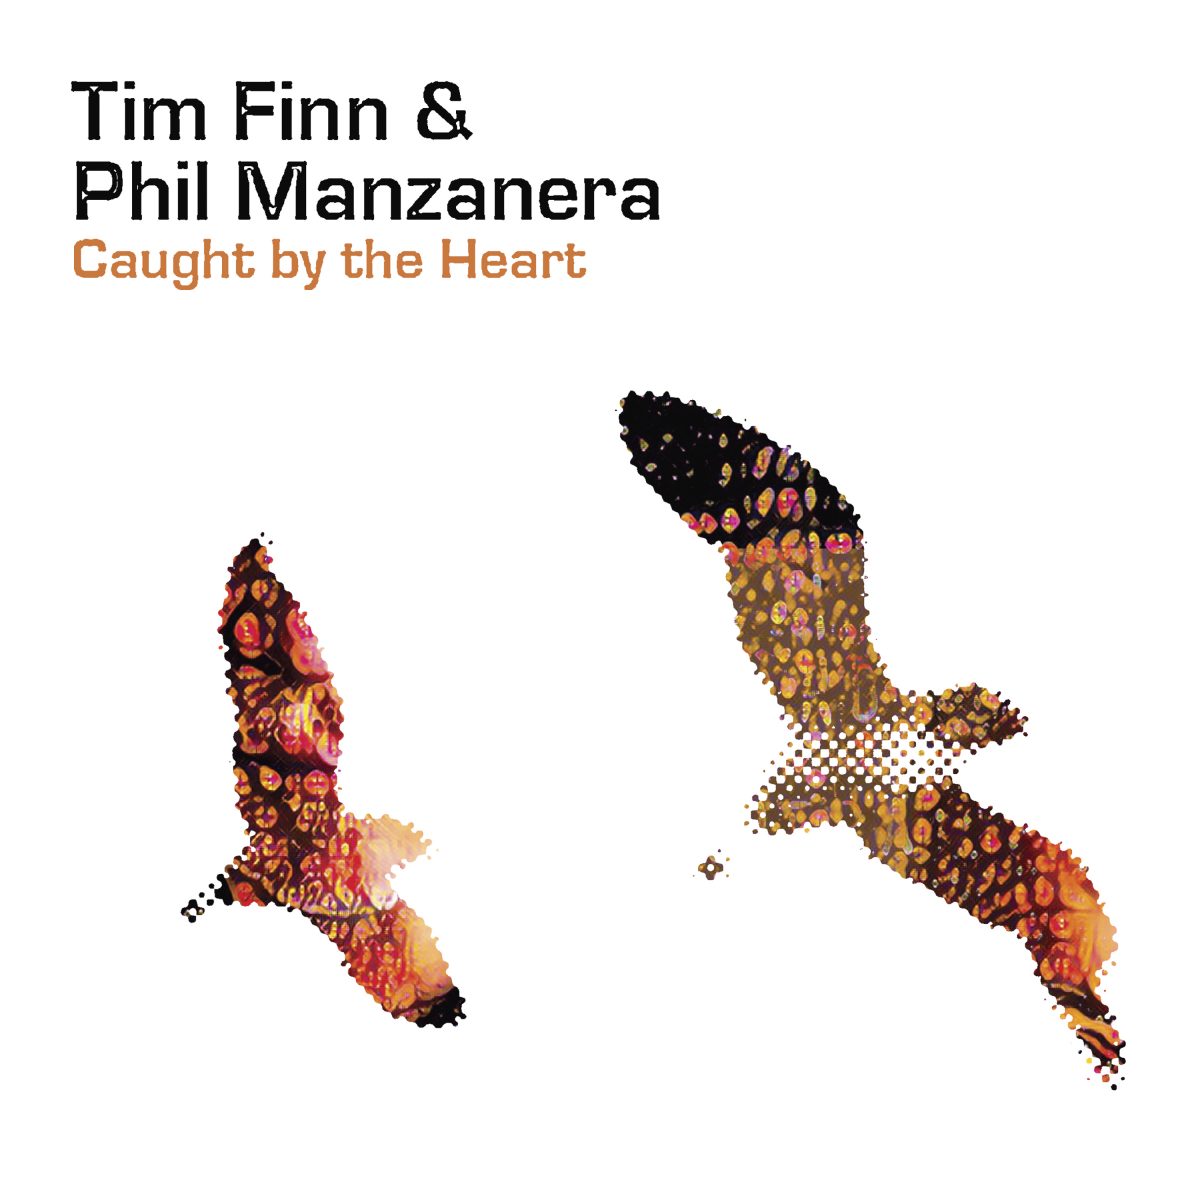 Tim Finn & Phil Manzanera – Caught by the Heart